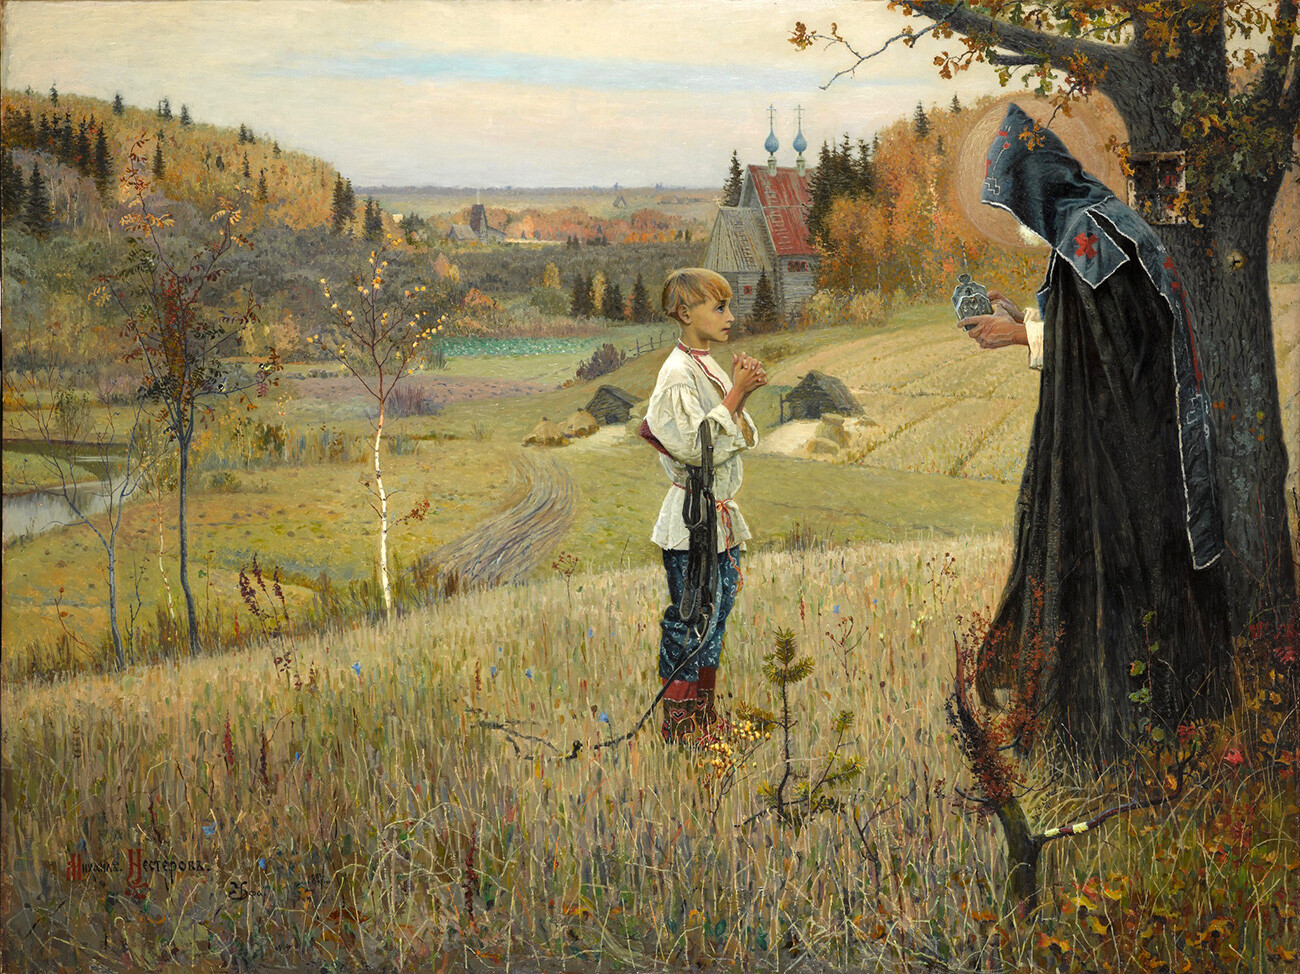 “Vision to the Youth Bartholomew”, 1890